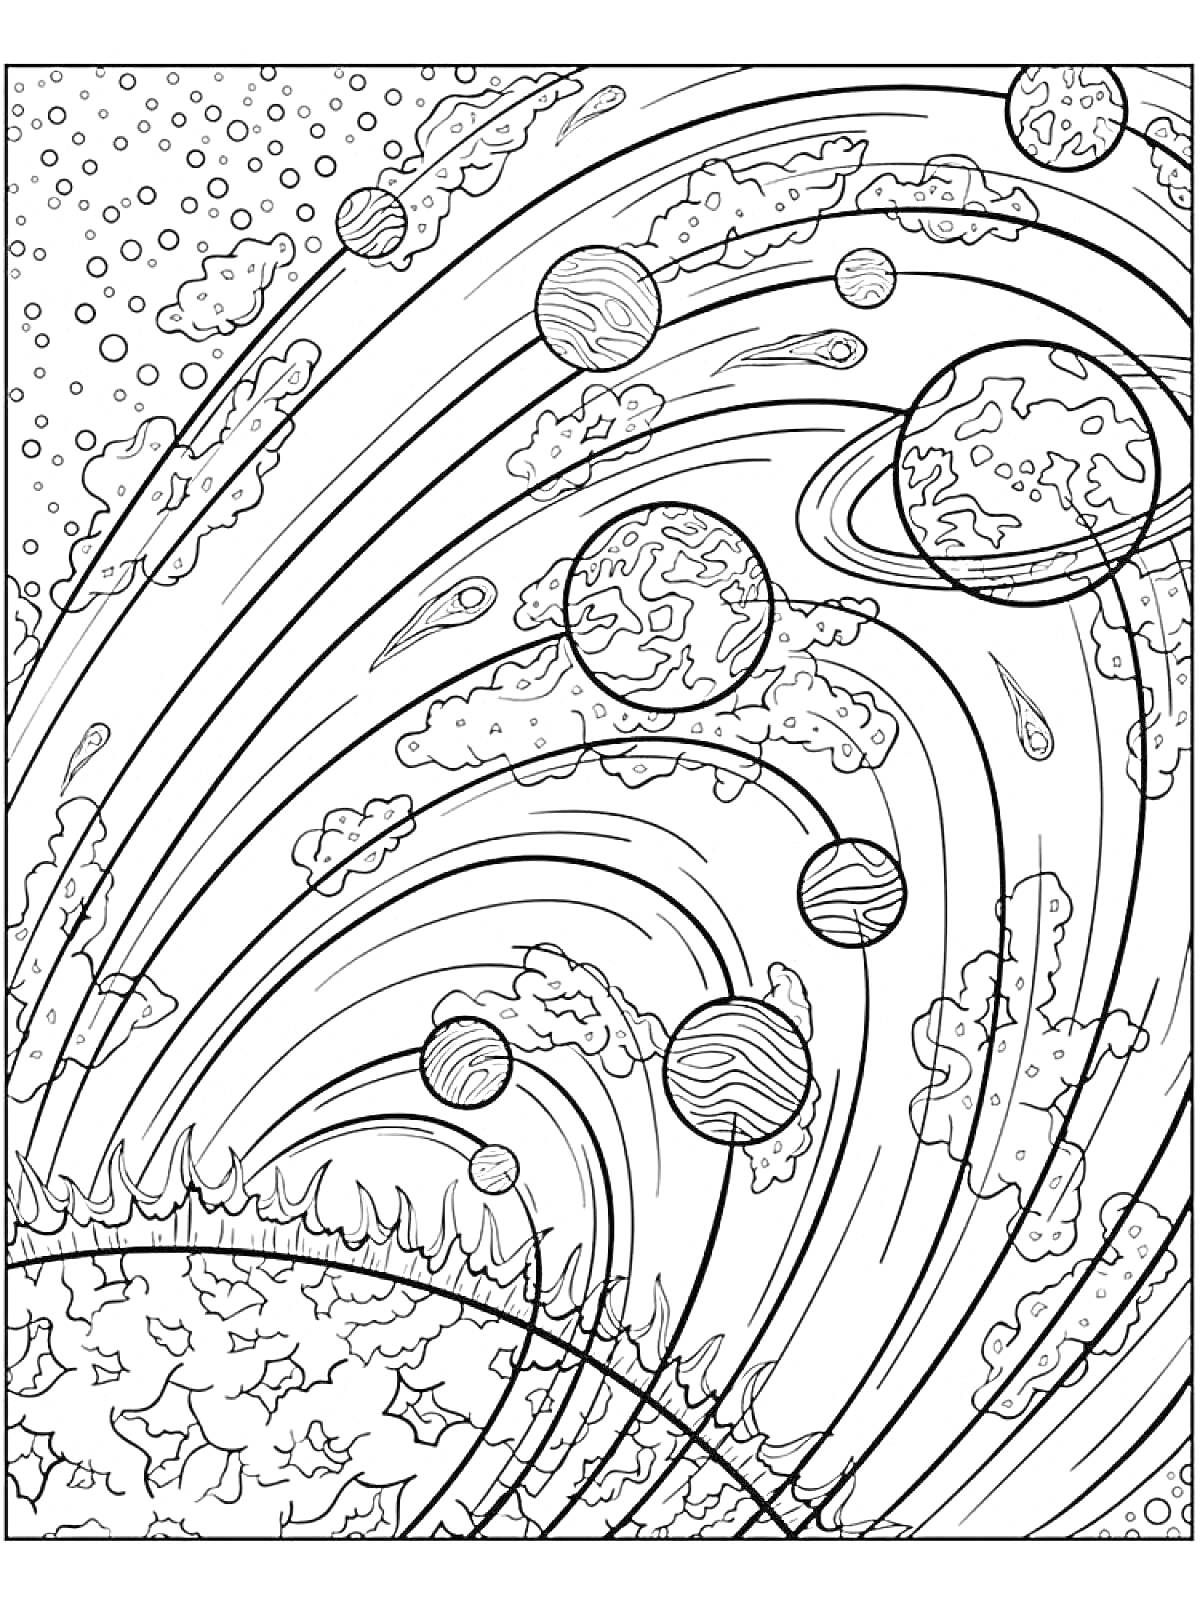 Раскраска Солнечная система с планетами, звездами и кометами на фоне космоса